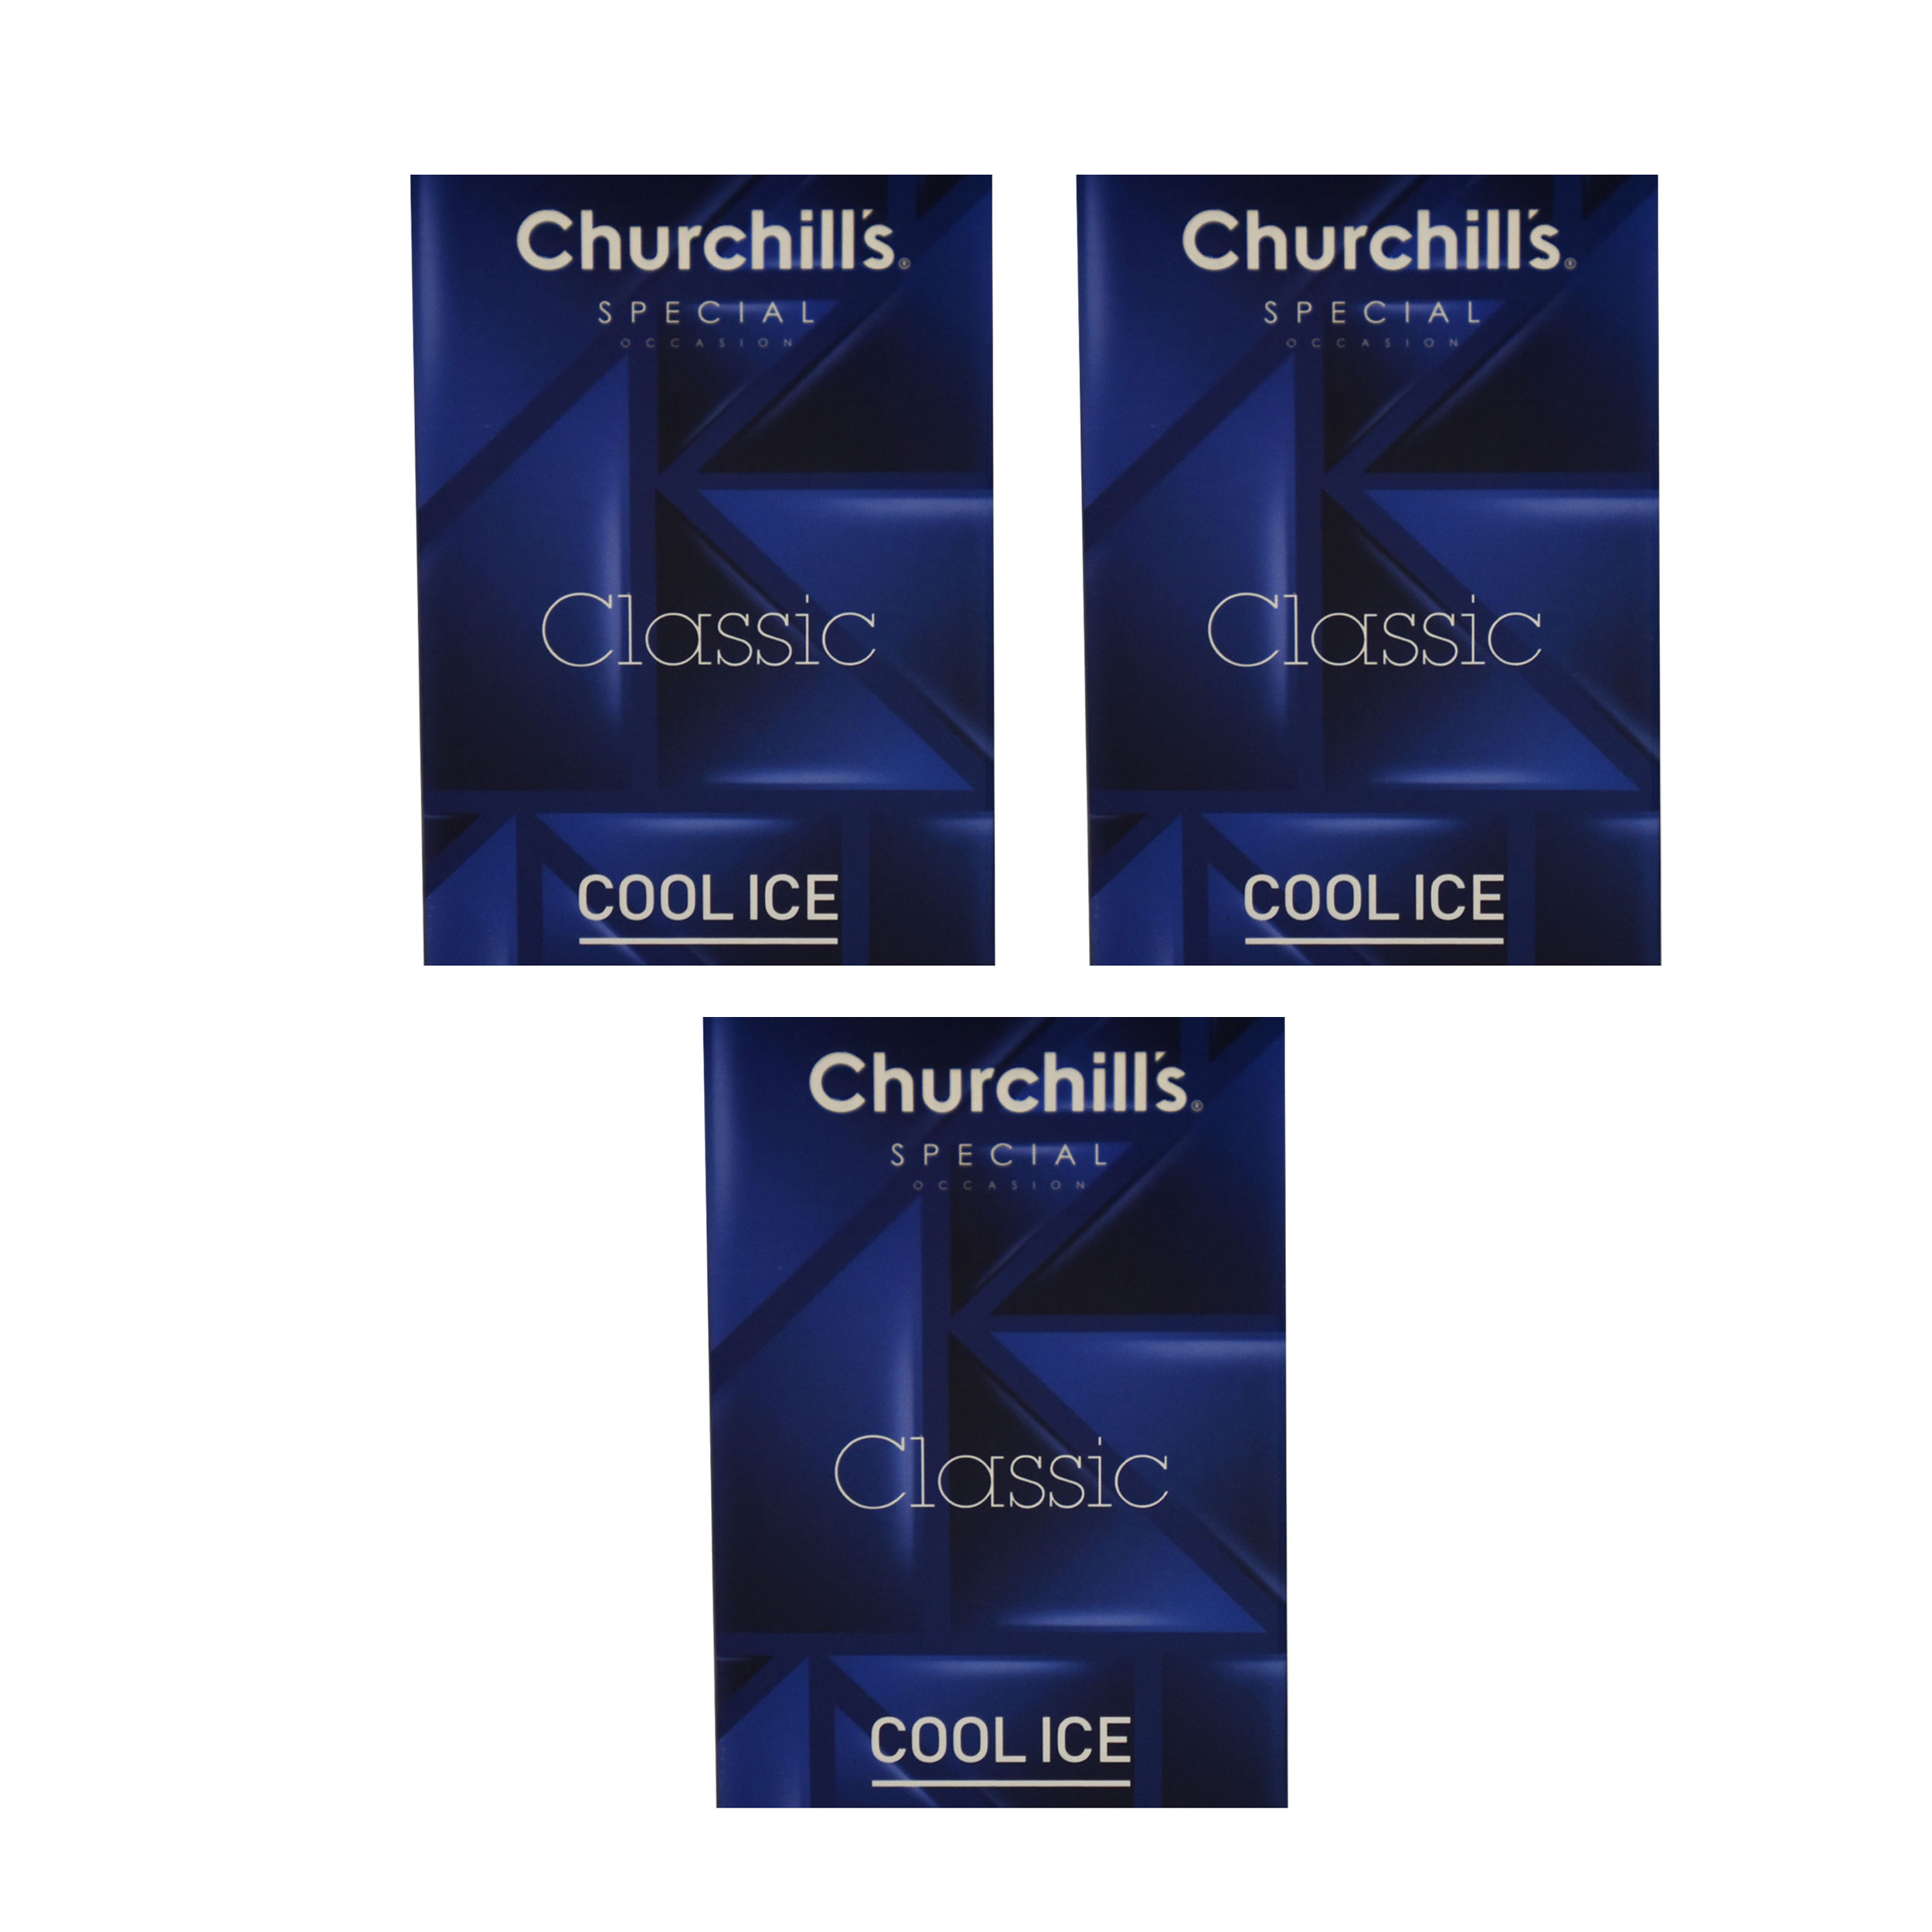 کاندوم چرچیلز مدل Classic Cool Ice مجموعه 3 عددی